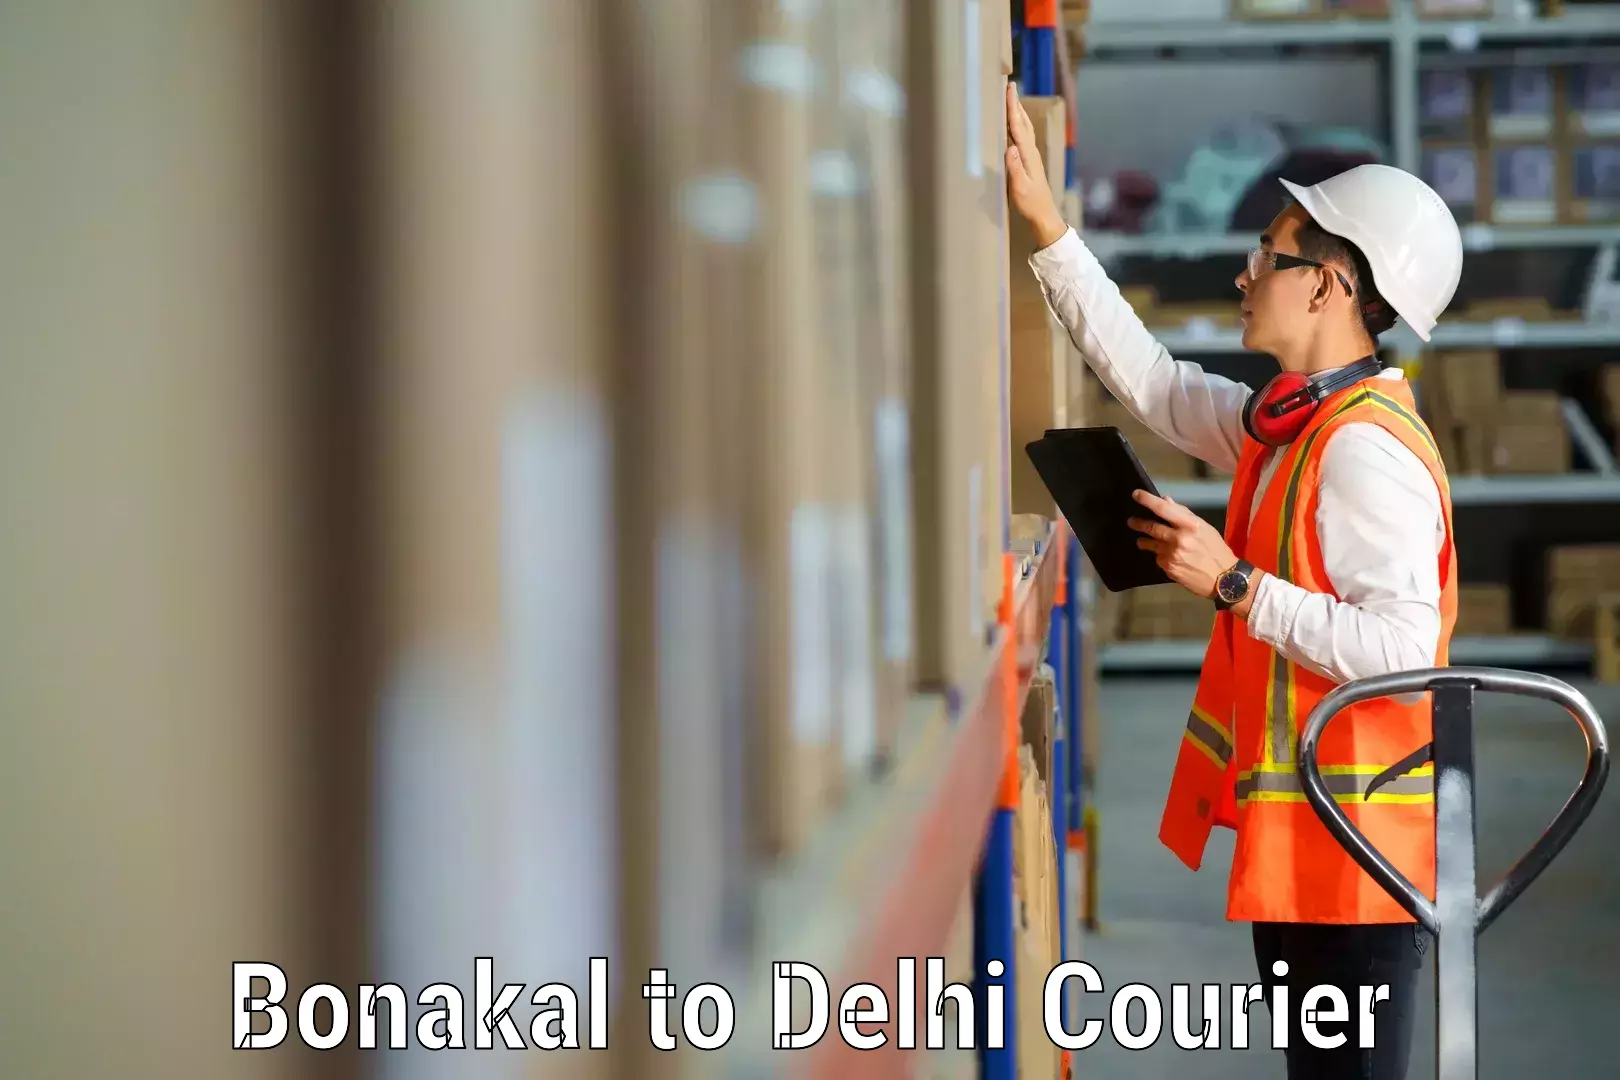 Reliable goods transport Bonakal to University of Delhi